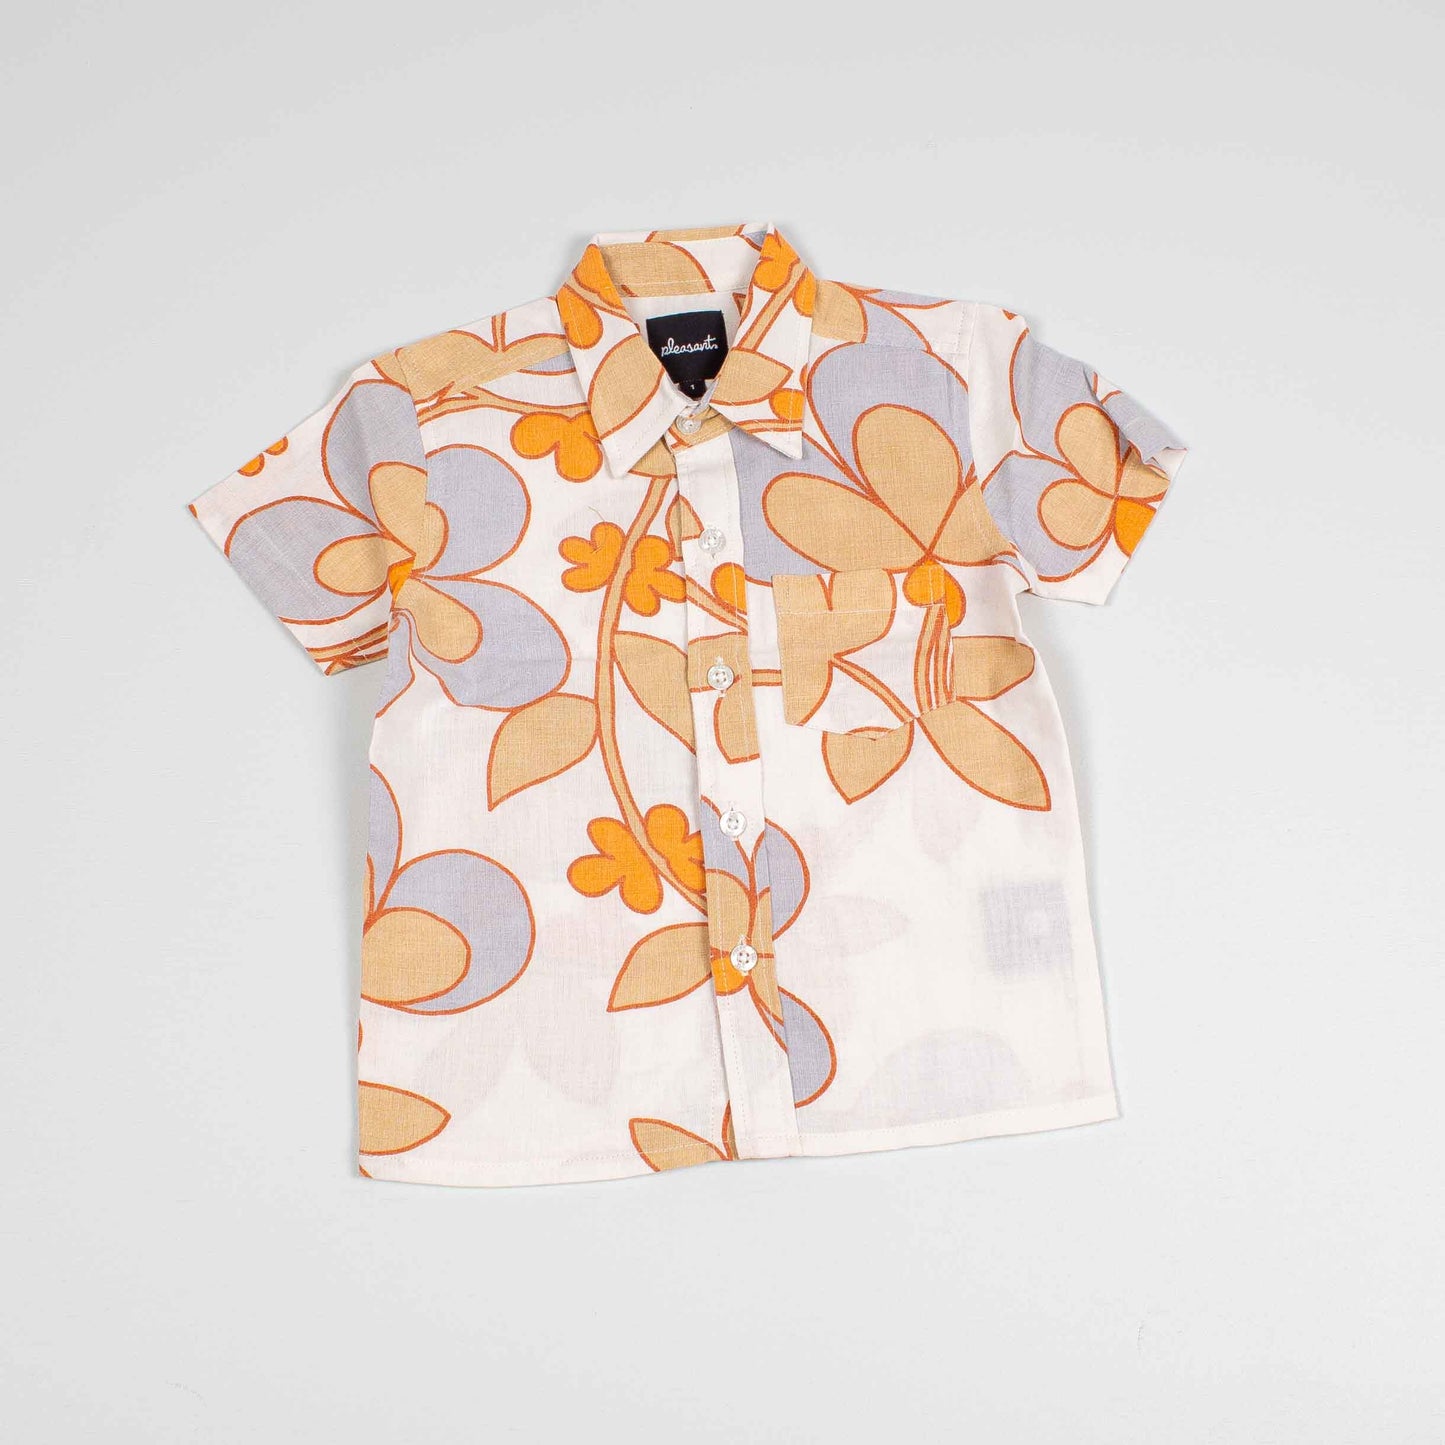 Flowers orange upcycled baby shirt